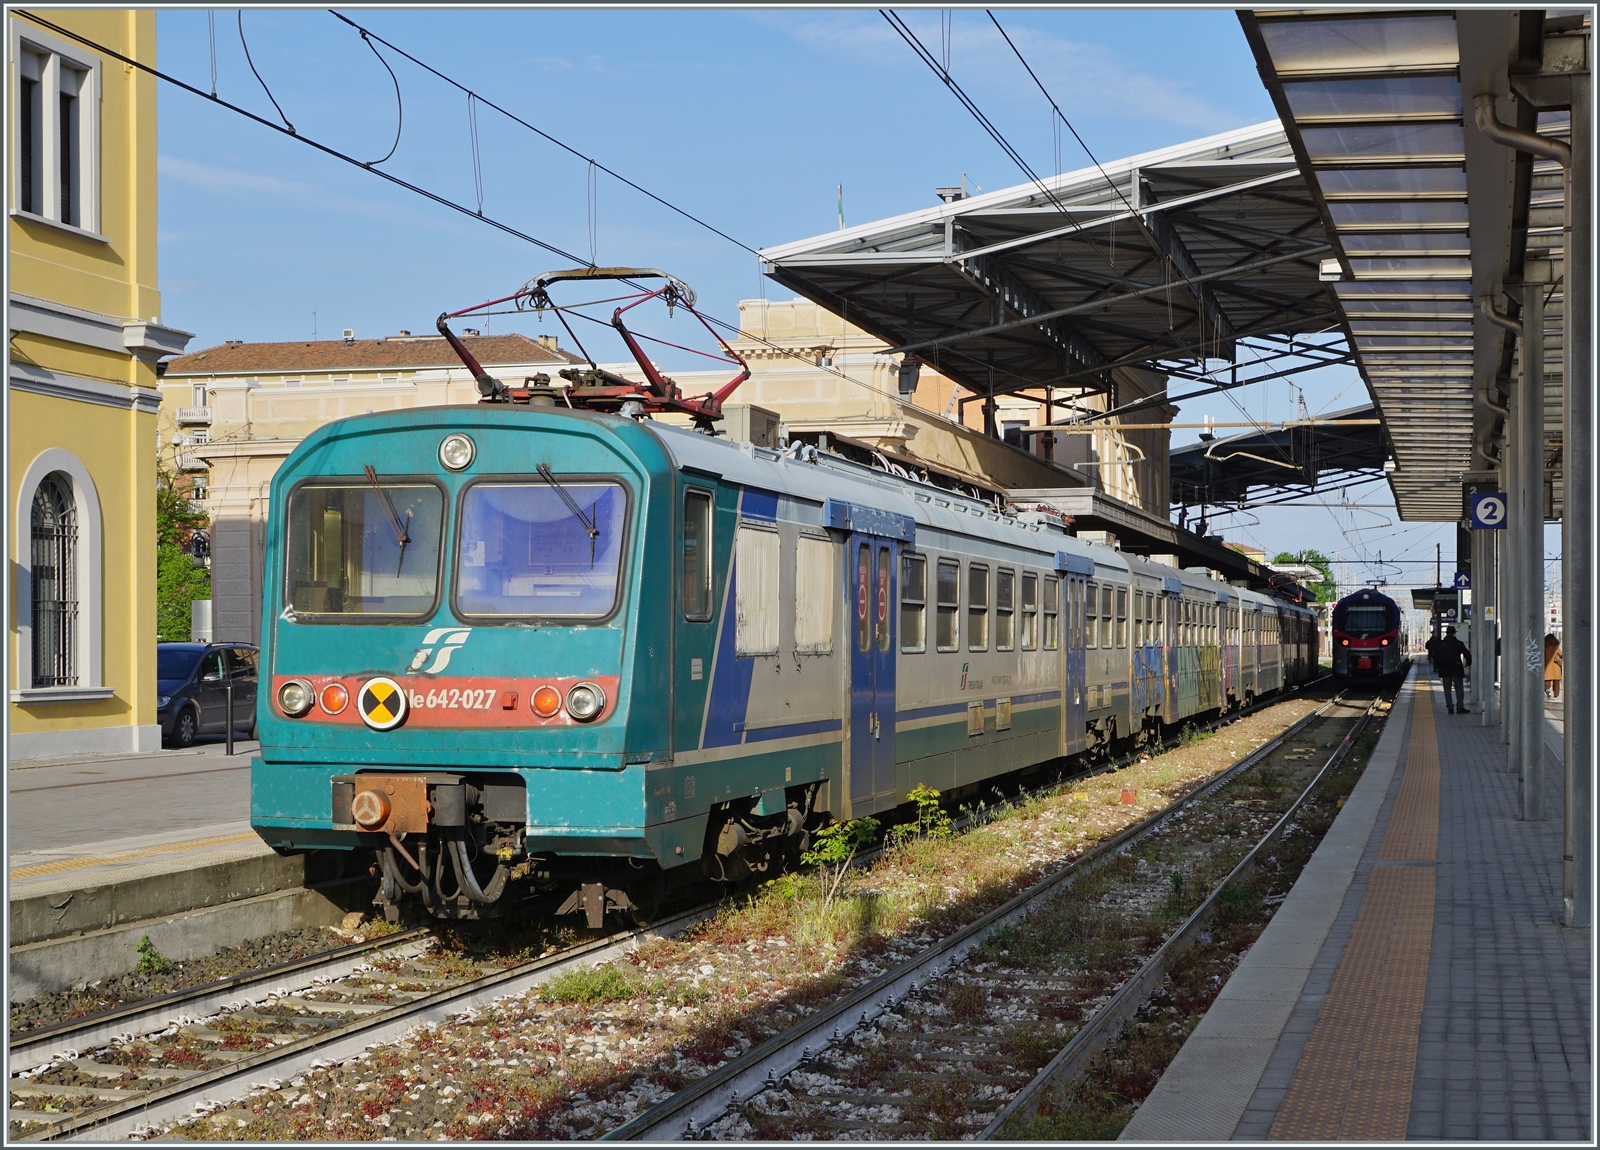 In Parma steht der FS Trenitalia Ale 624 027. Einige dieser Triebwagen sind noch auf der Strecke von Parma nach La Spezia im Einsatz, sonst sieht man die einst über das ganze Land verbreiteten Triebzüge kaum noch im Einsatz.

18. April 2023